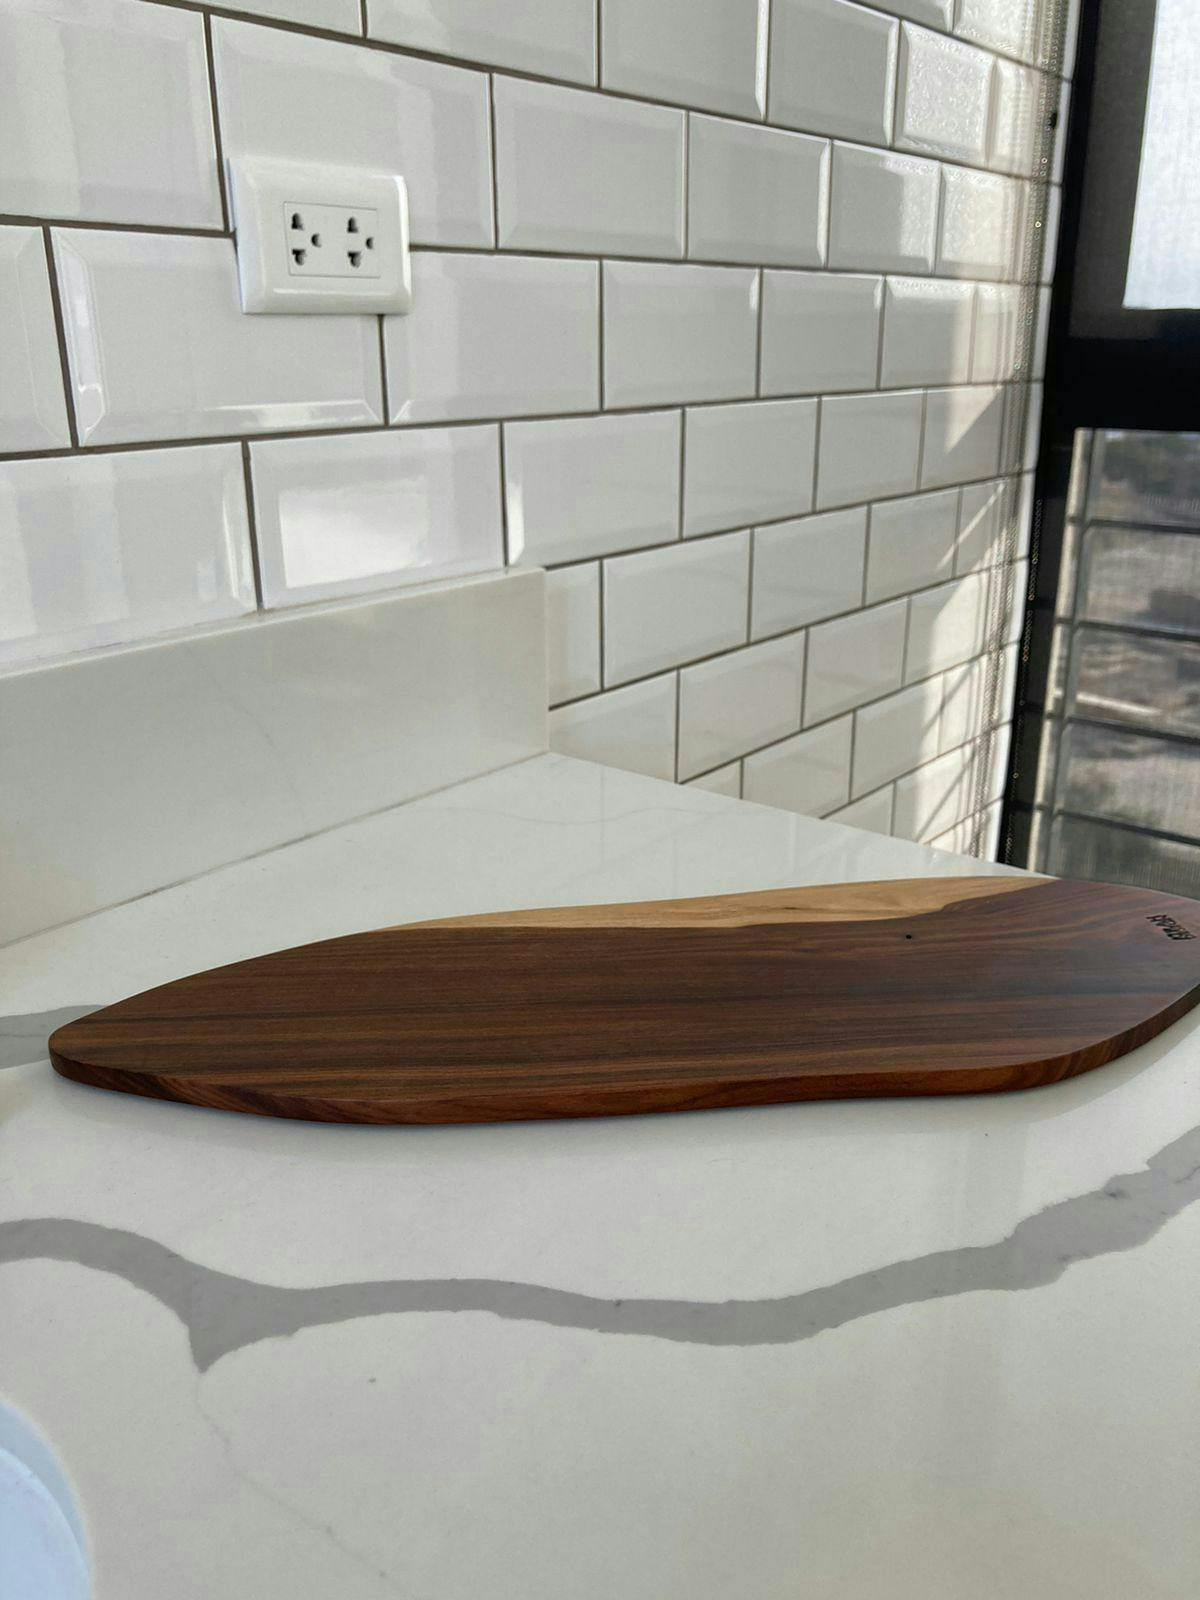 Tabla decorativa o para piqueos Kirah Design marca sostenible en madera rescatada con acabados de alta calidad. Medidas 54x17cm. Precio original S/390